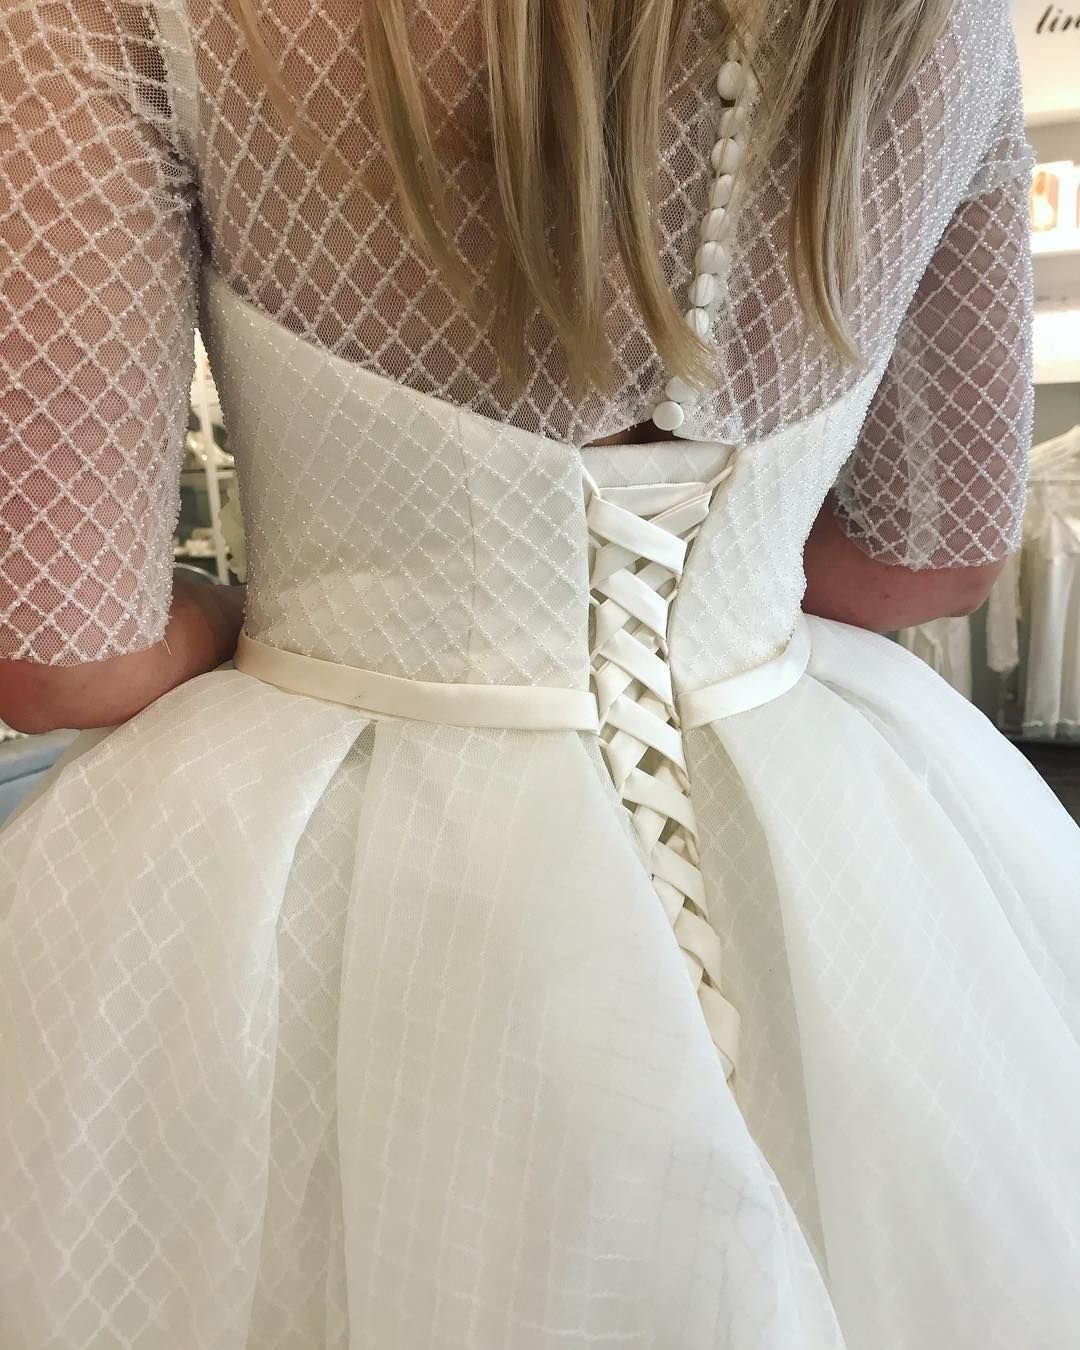 Шнуровка на спине. Свадебное платье со шнуровкой на спине. Шнуровка свадебного платья. Шнуровка корсета свадебного платья.